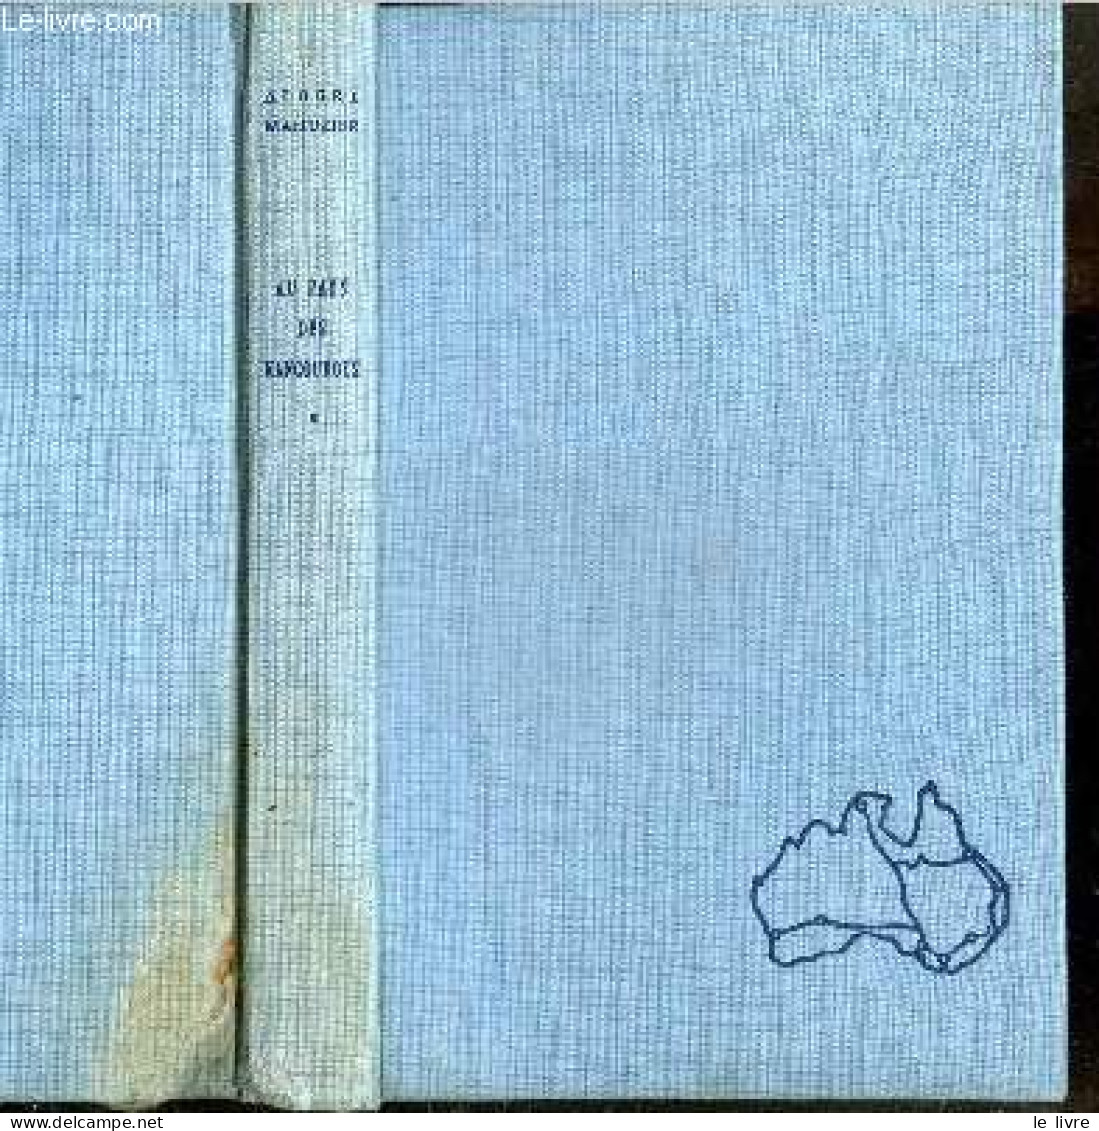 Au Pays Des Kangourous + Envoi De L'auteur - MAHUZIER ALBERT - 1958 - Livres Dédicacés